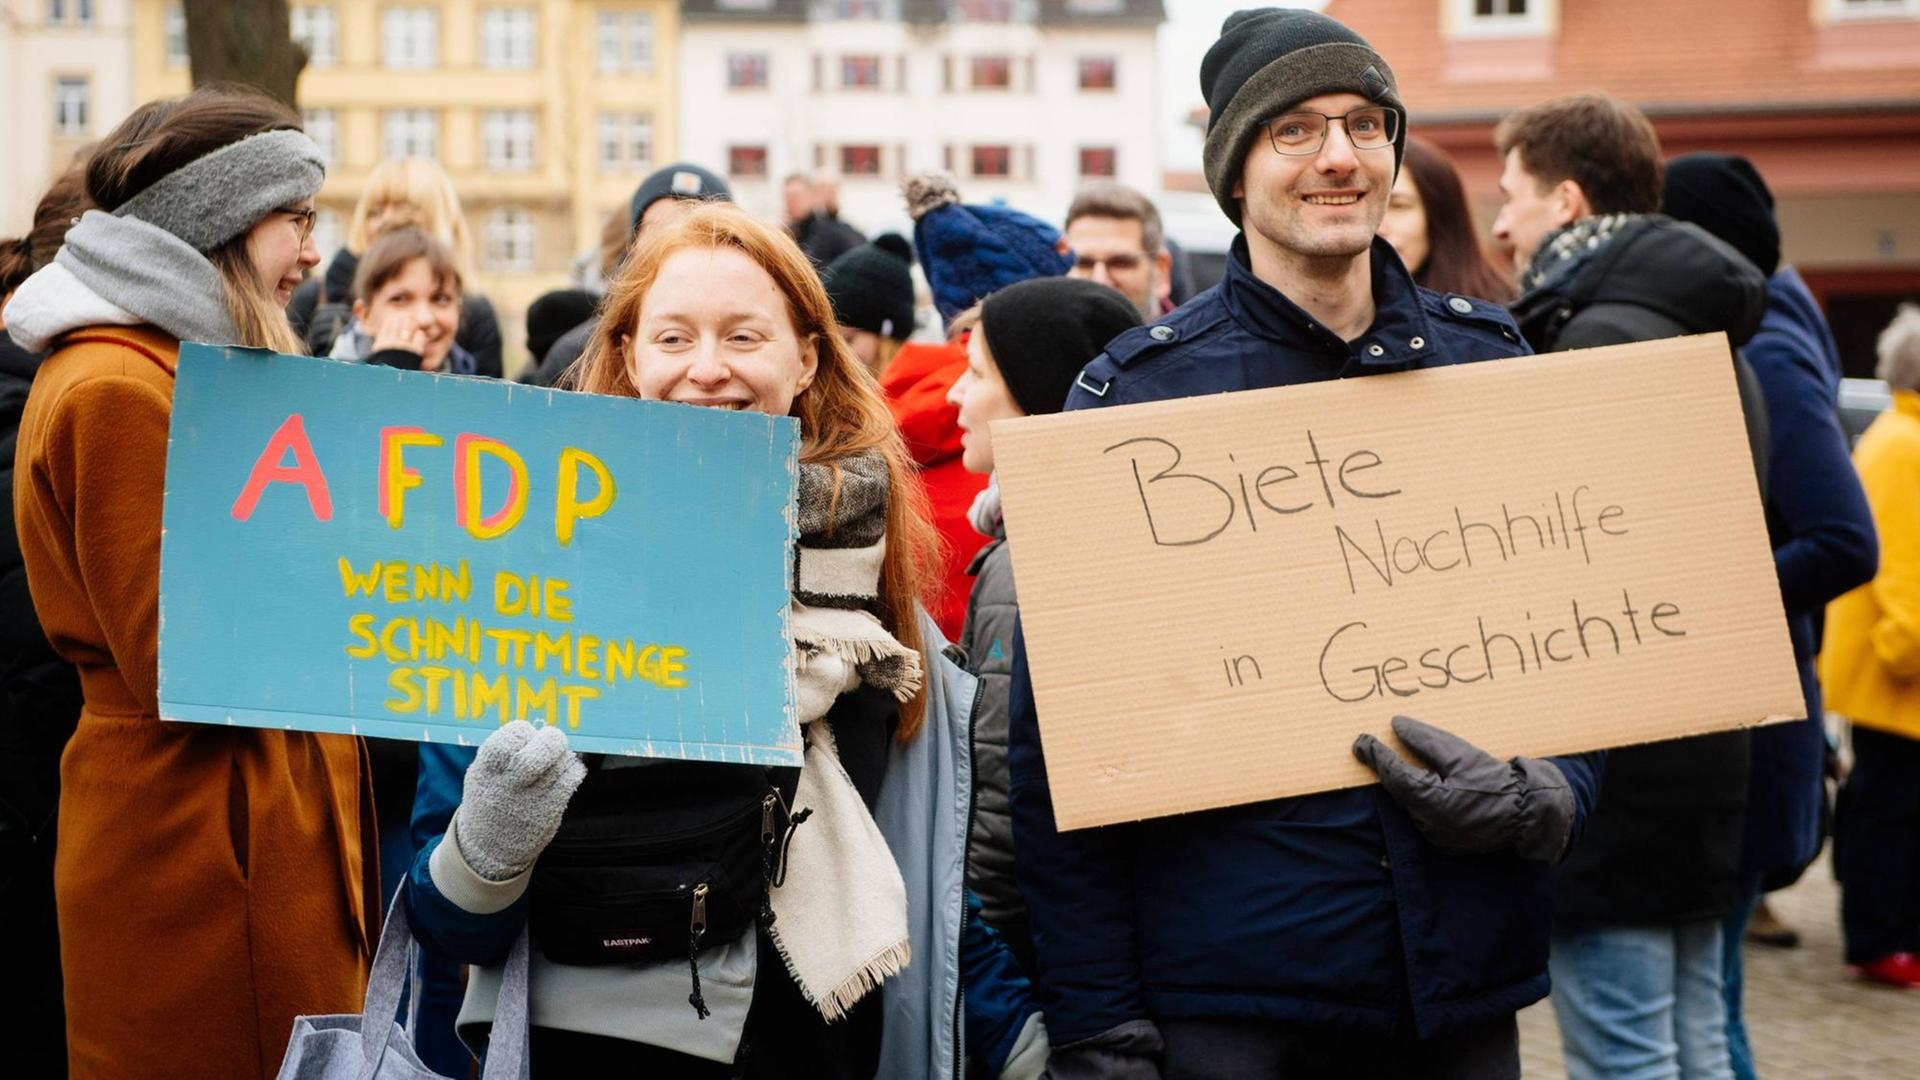 Demonstranten nach der Ministerpräsidentenwahl vor der Thüringer Staatskanzlei in Erfurt Im Bild: Die Demonstranten versammeln sich vor der Thüringer Staatskanzlei nach der Ministerpräsidentenwahl